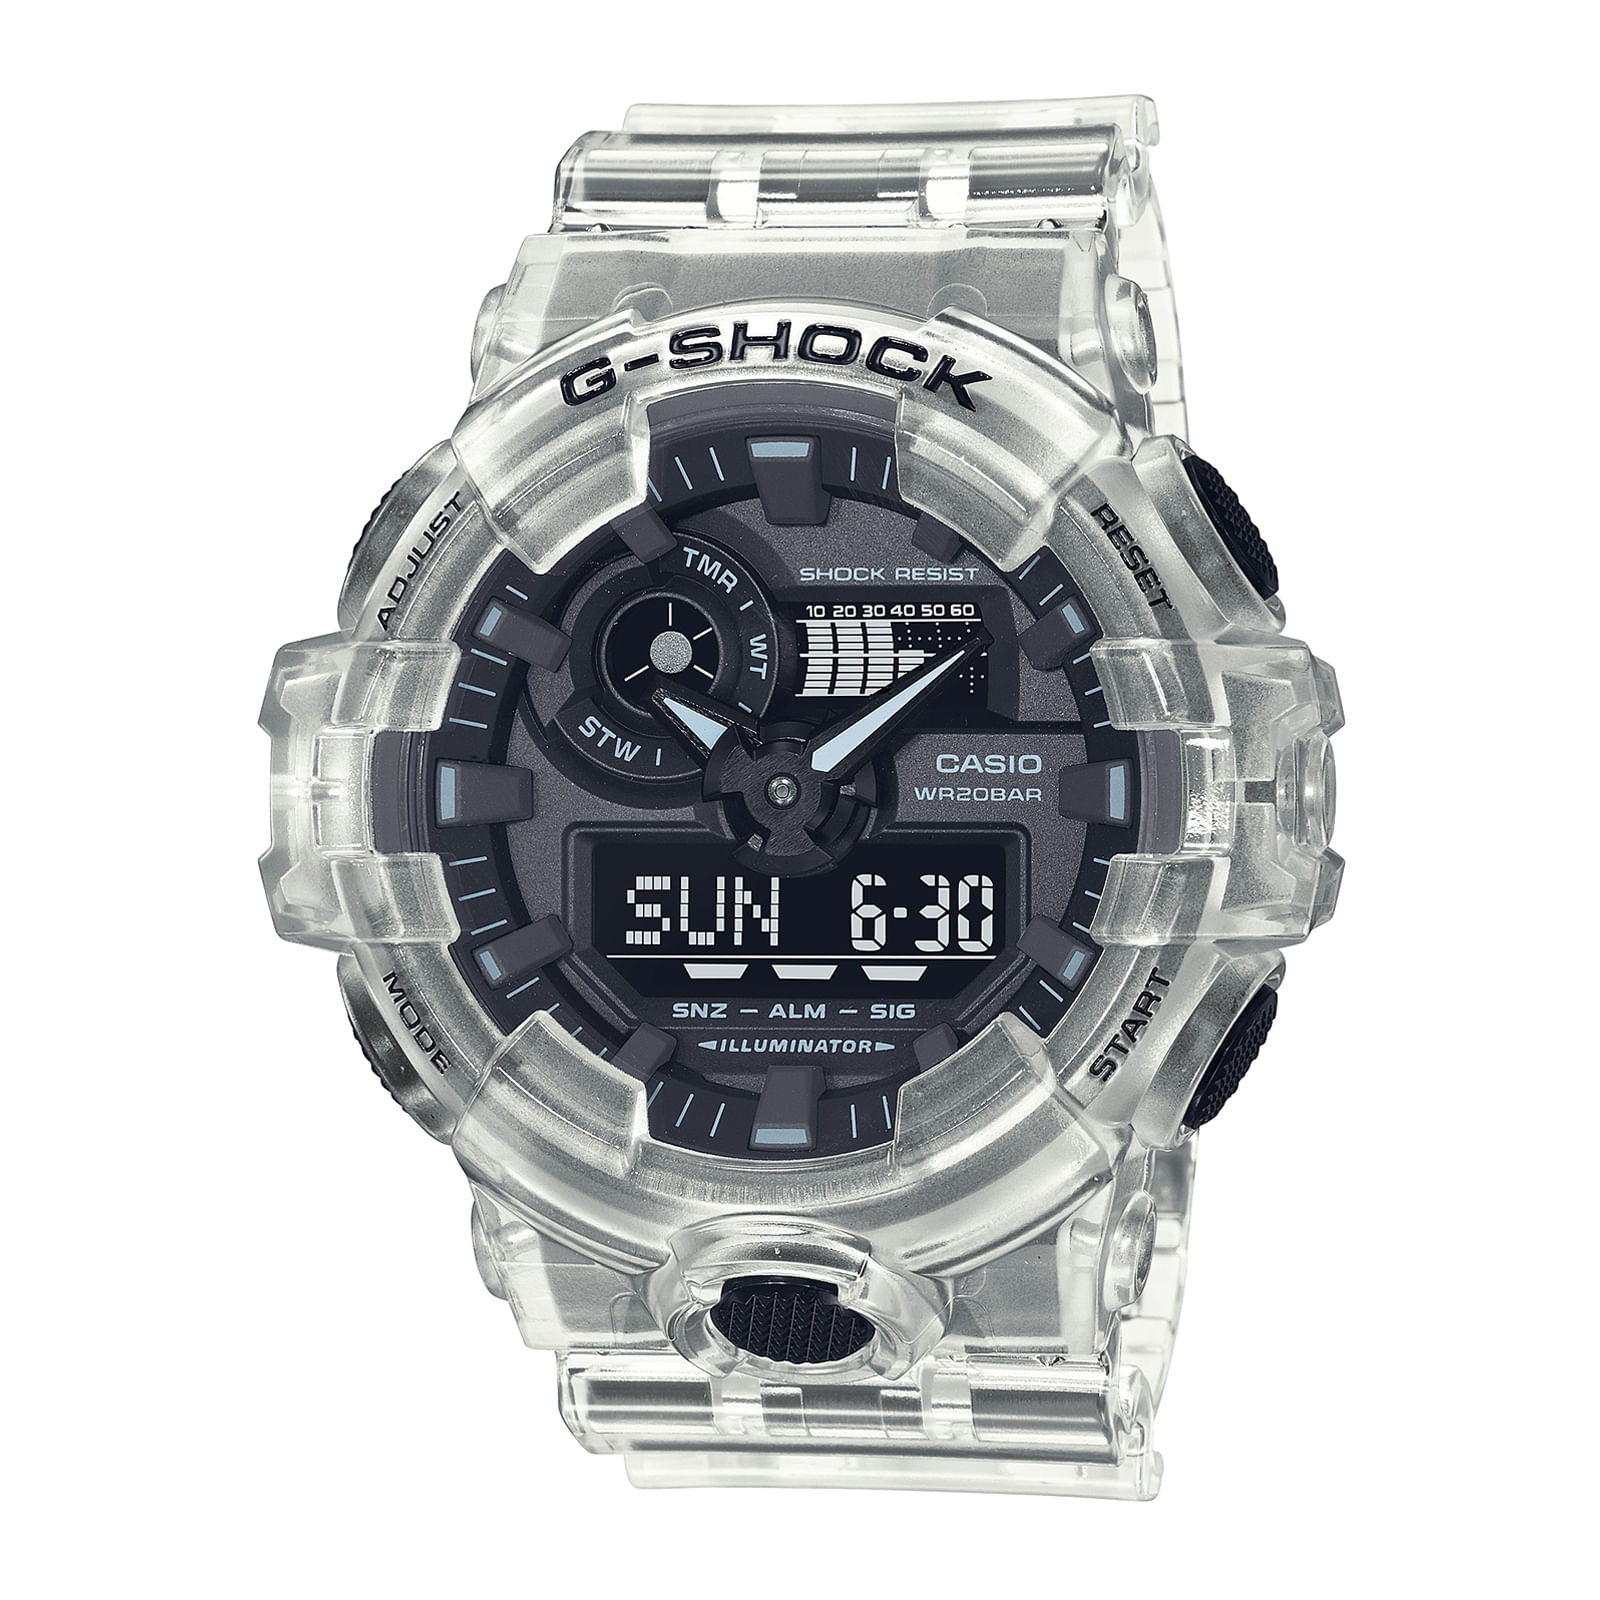 Reloj G-SHOCK GA-700SKE-7A Resina Hombre Transparente